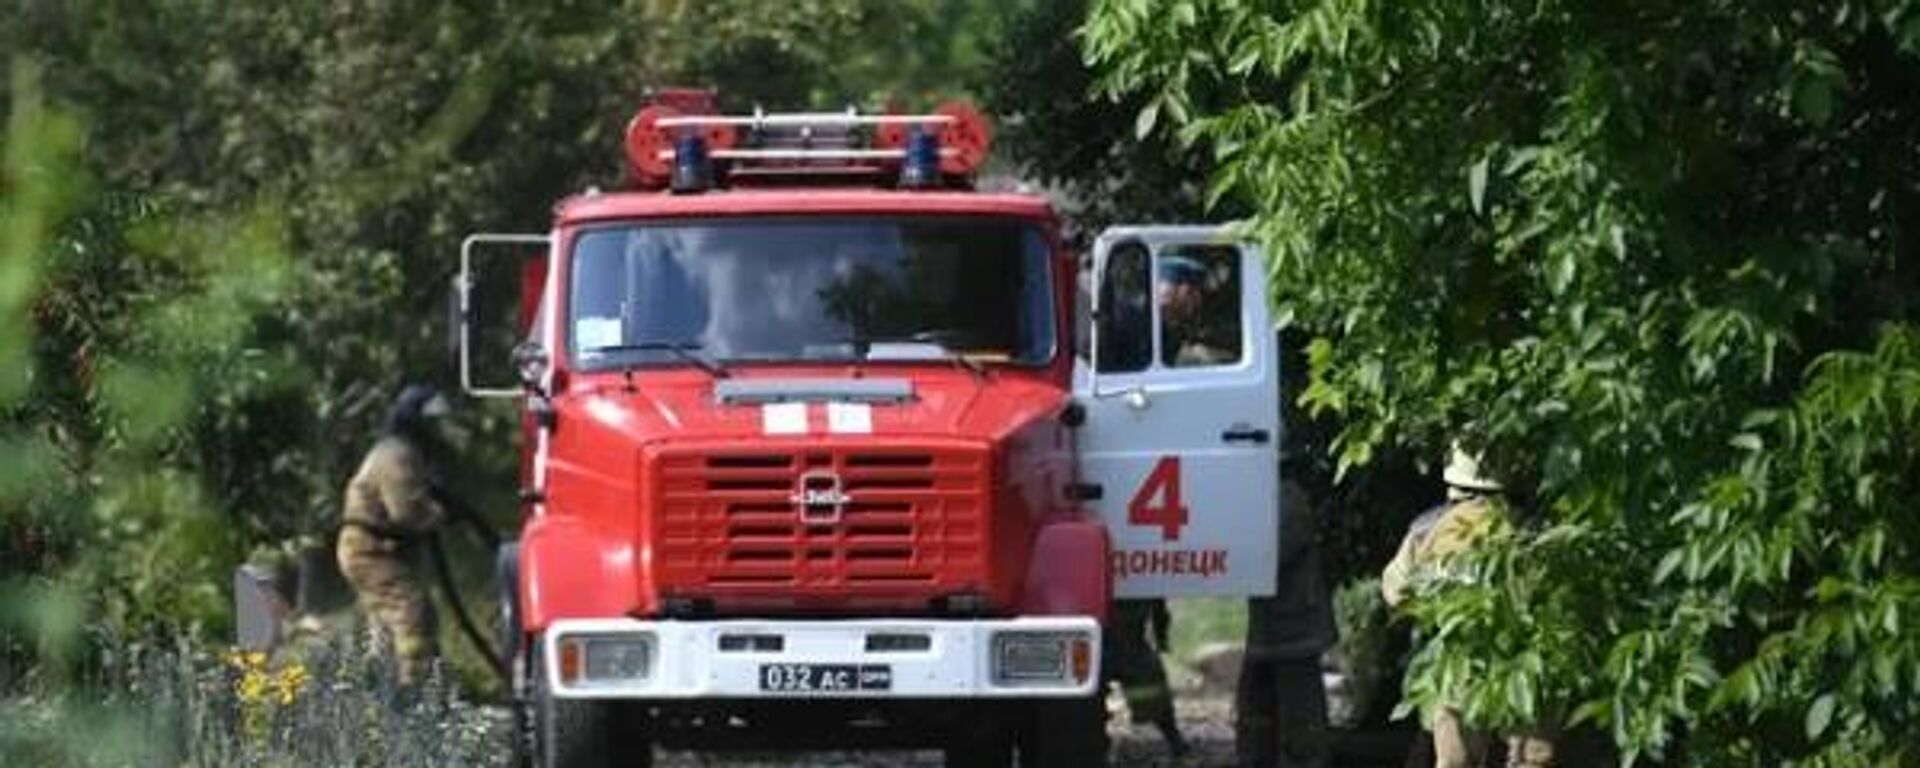 Equipes de emergência se dirigem ao local de incêndio no distrito de Budennovsky, na República Popular de Donetsk (RPD), em 26 de julho de 2022 (foto de arquivo) - Sputnik Brasil, 1920, 05.08.2022